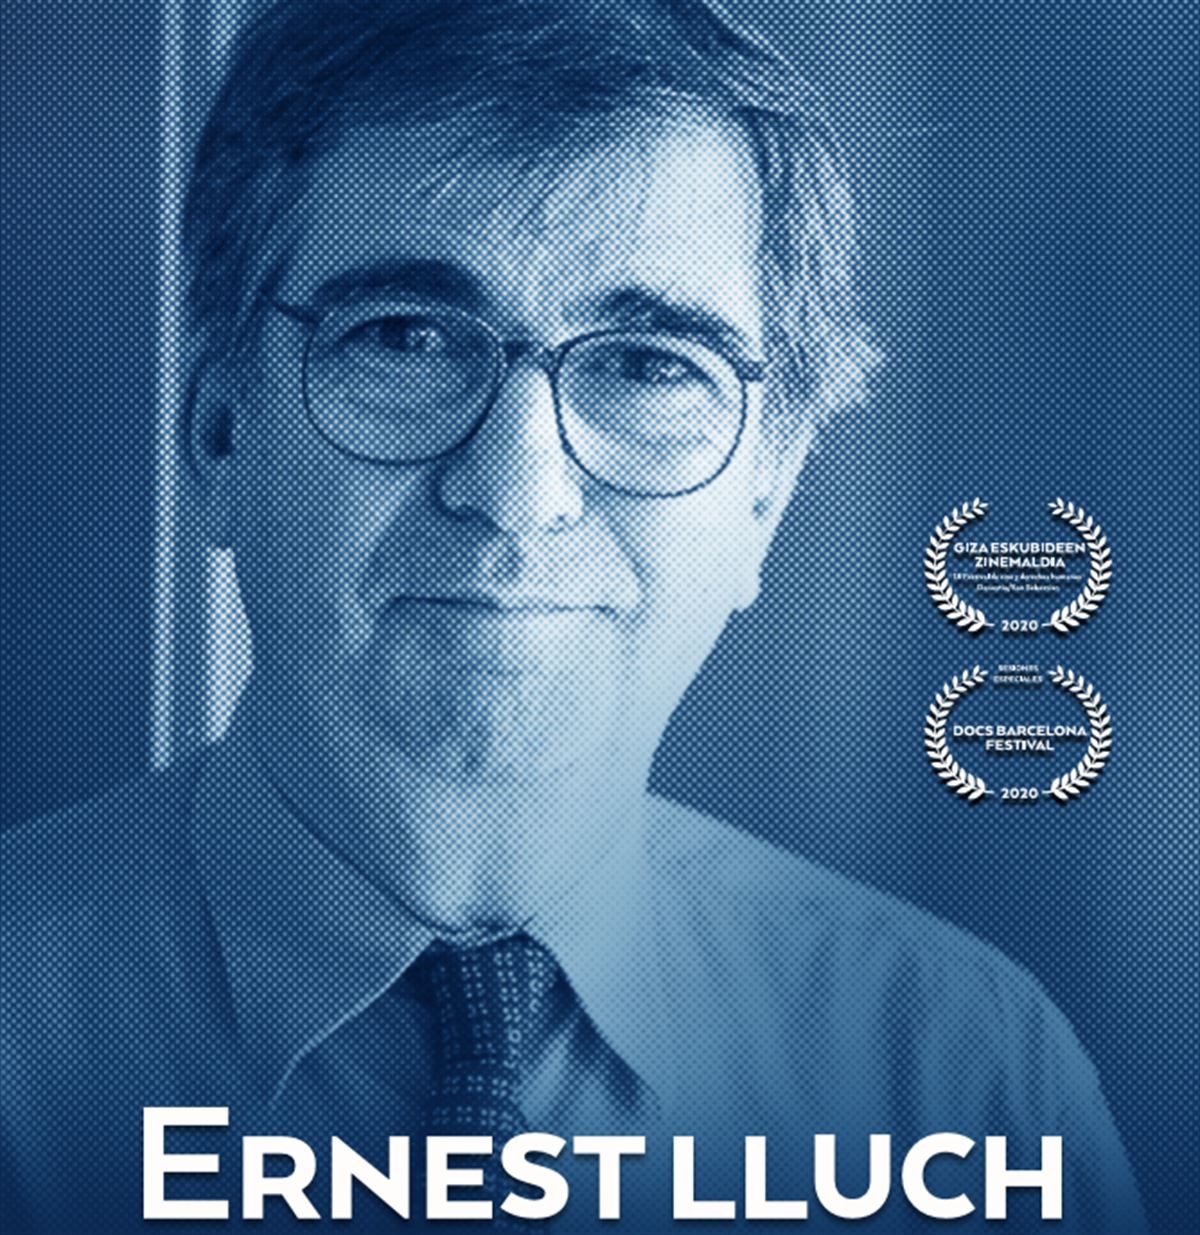 Ernest Lluch cartel documental